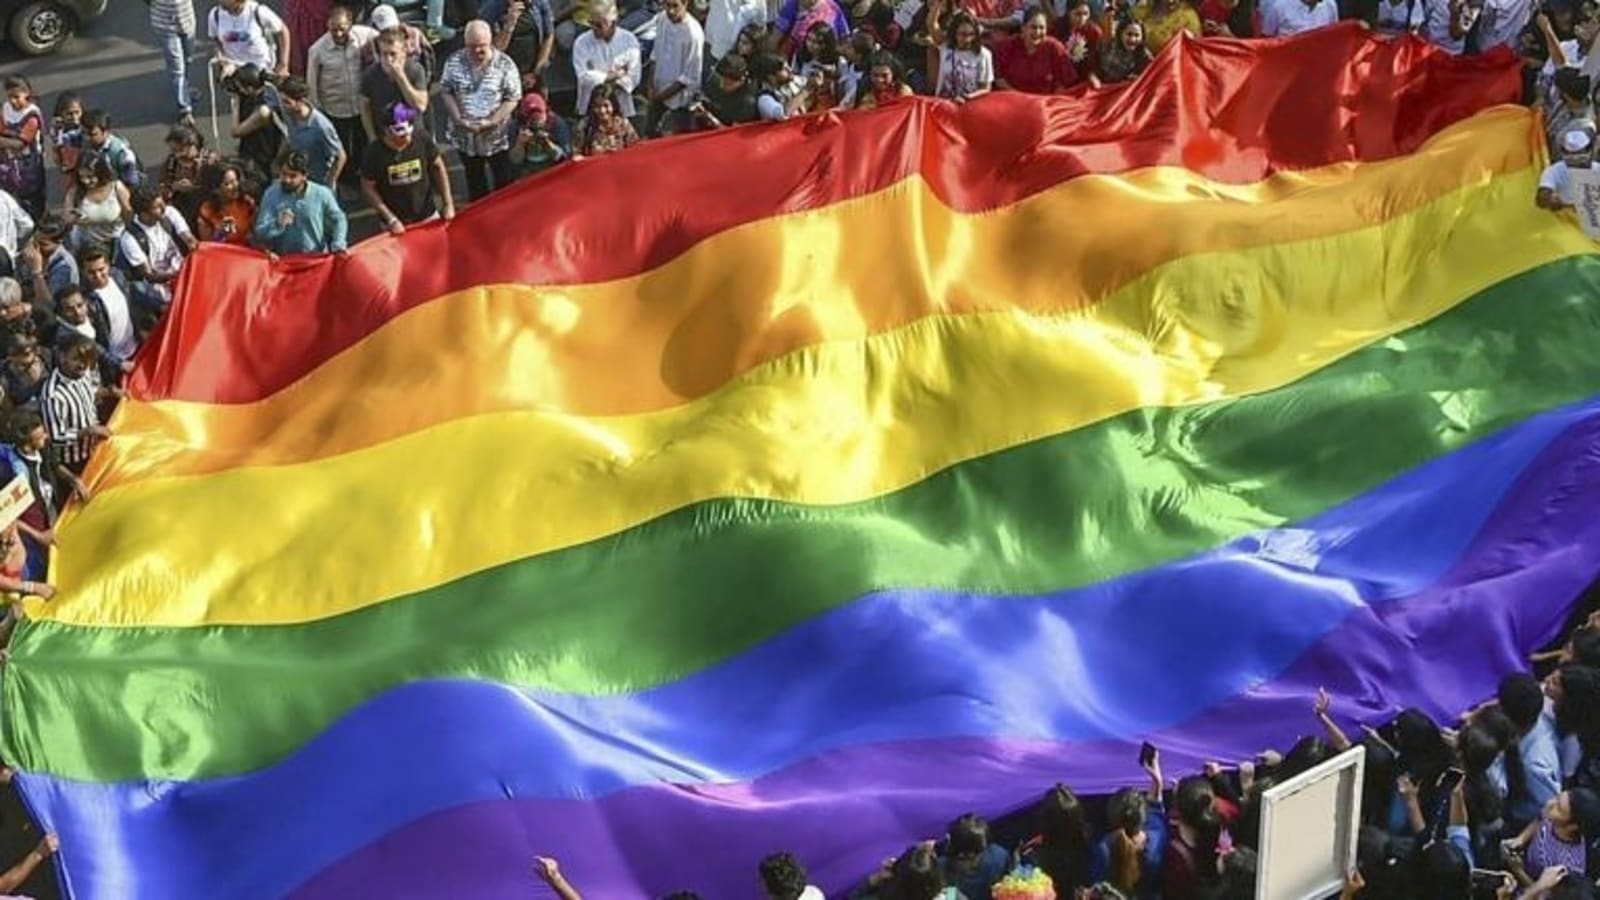 gay pride parade 2021 florida